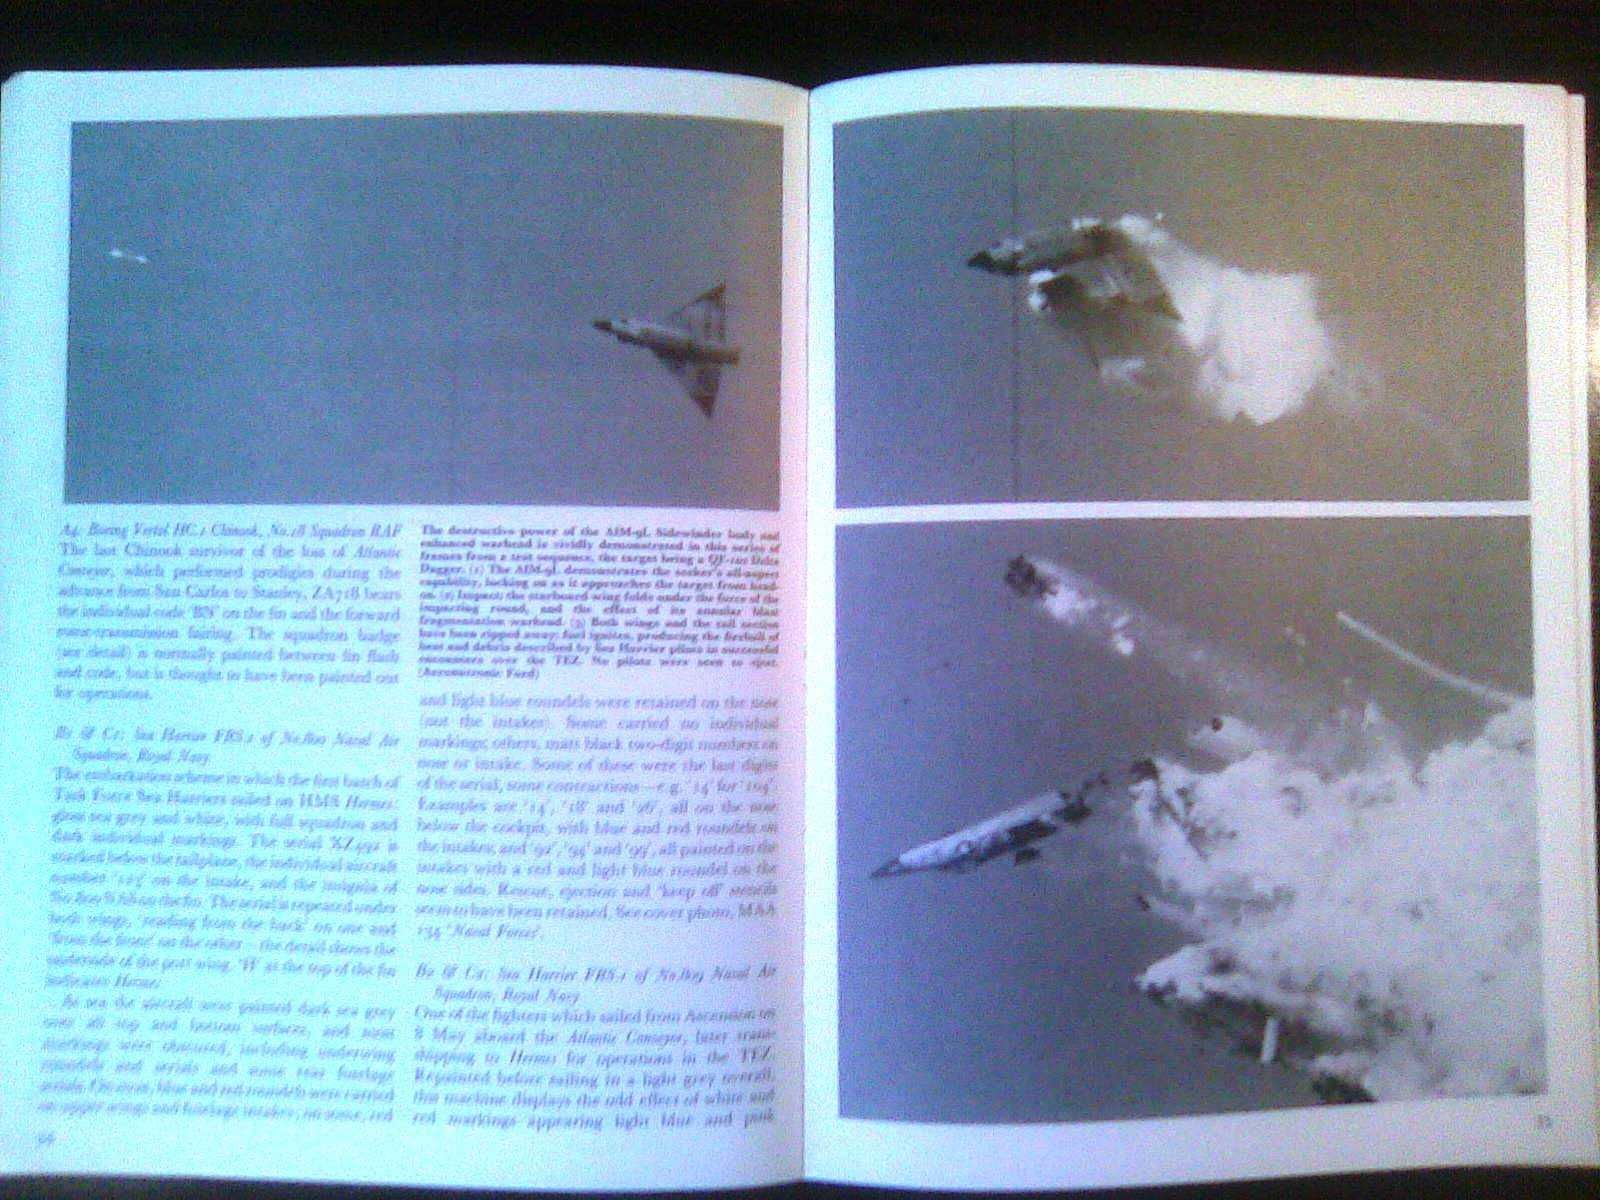 книга "Битва ВВС за Фолкленды" авиационный справочник Англия 1983 г.